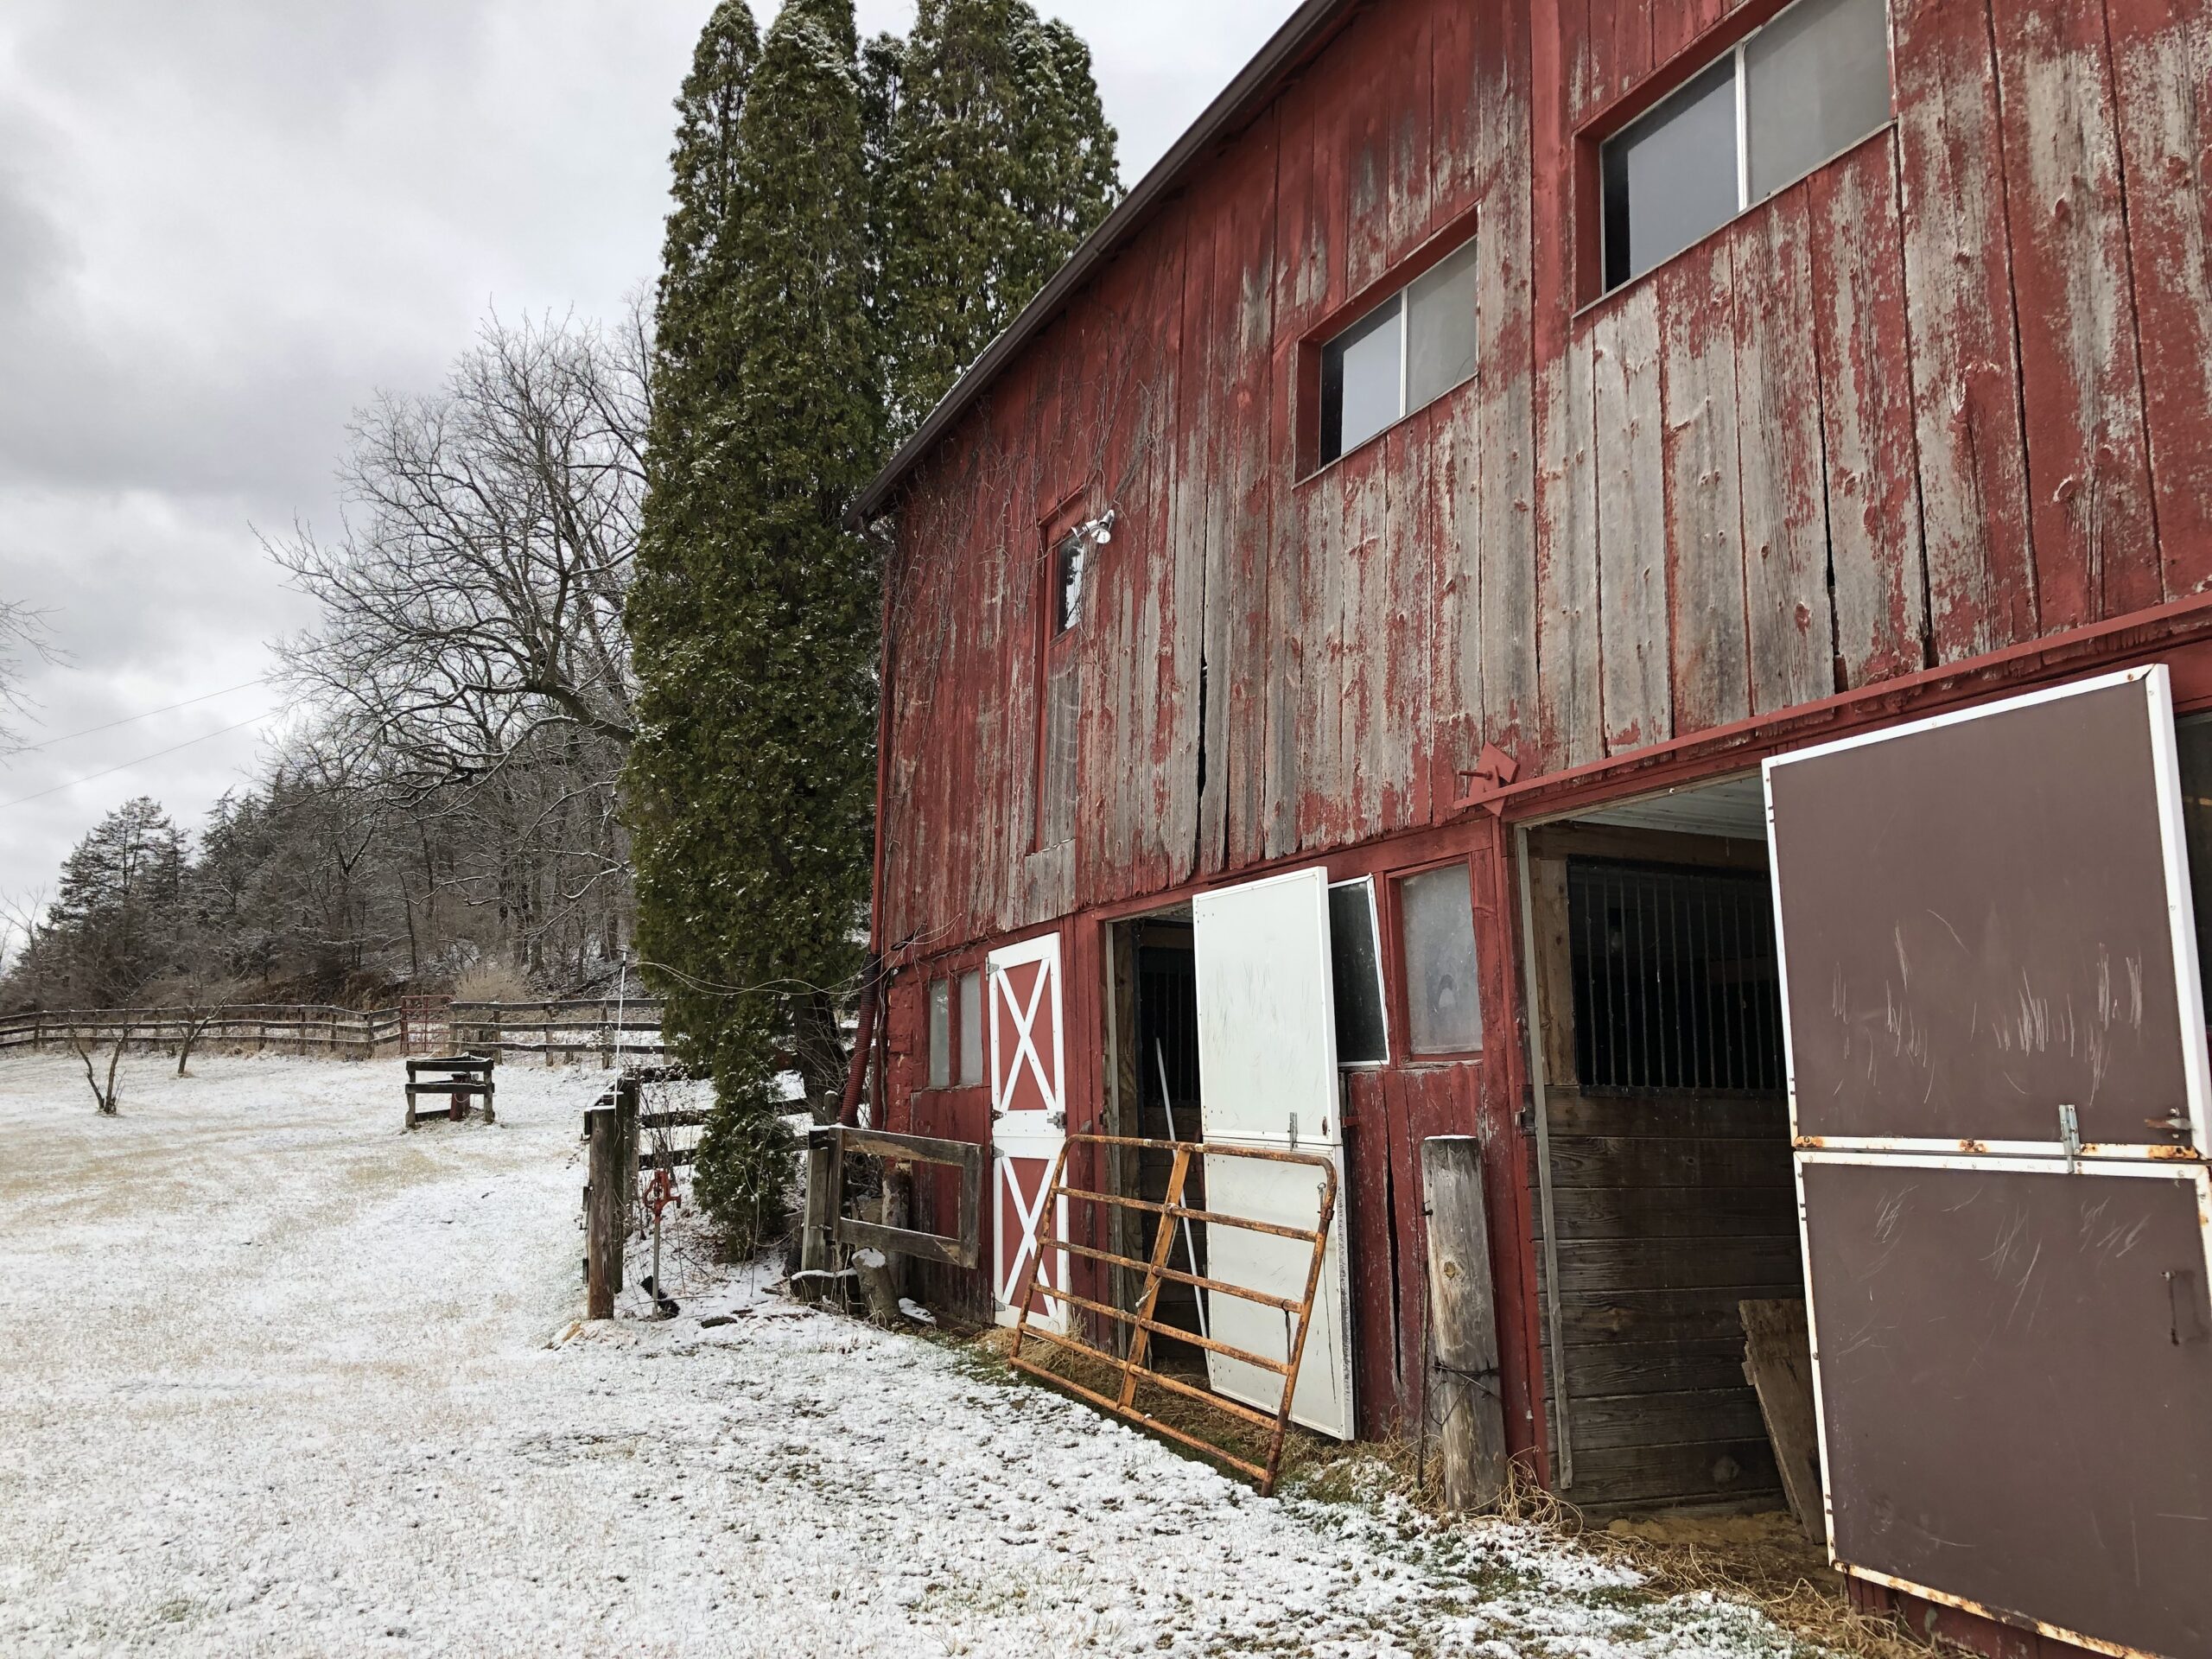 A red barn sits on a snowy yard.